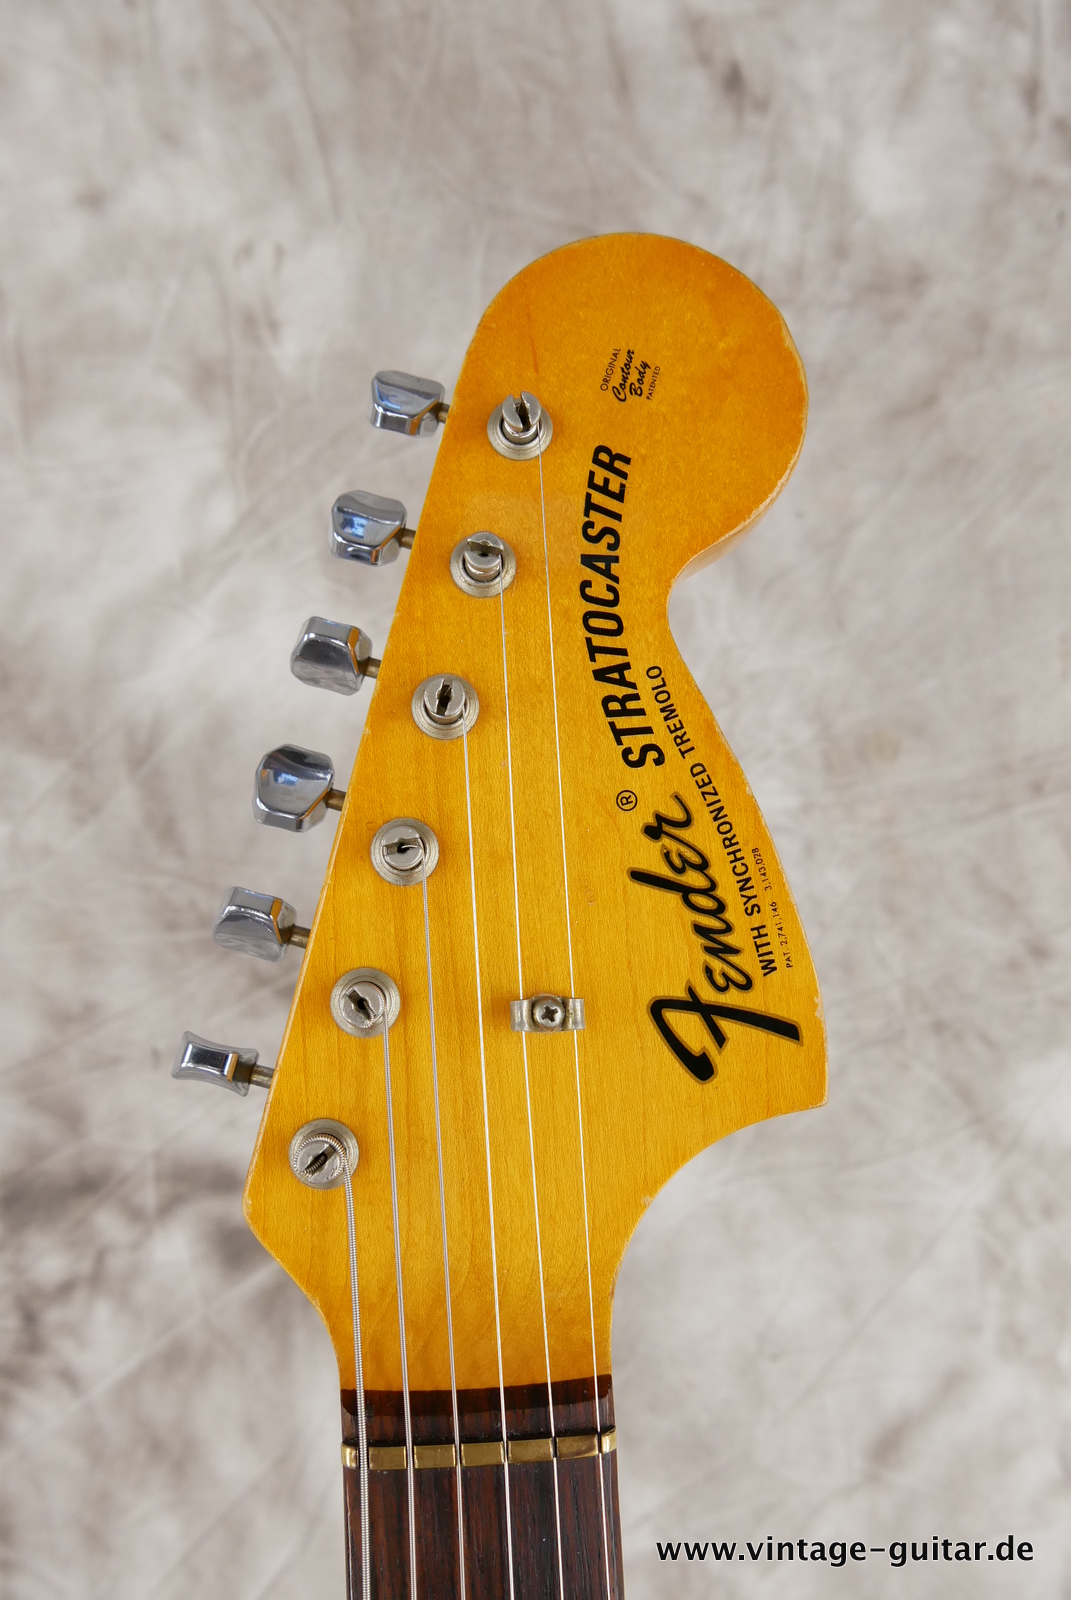 Fender-Stratocaster-1971-sunburst-4-hole-009.JPG